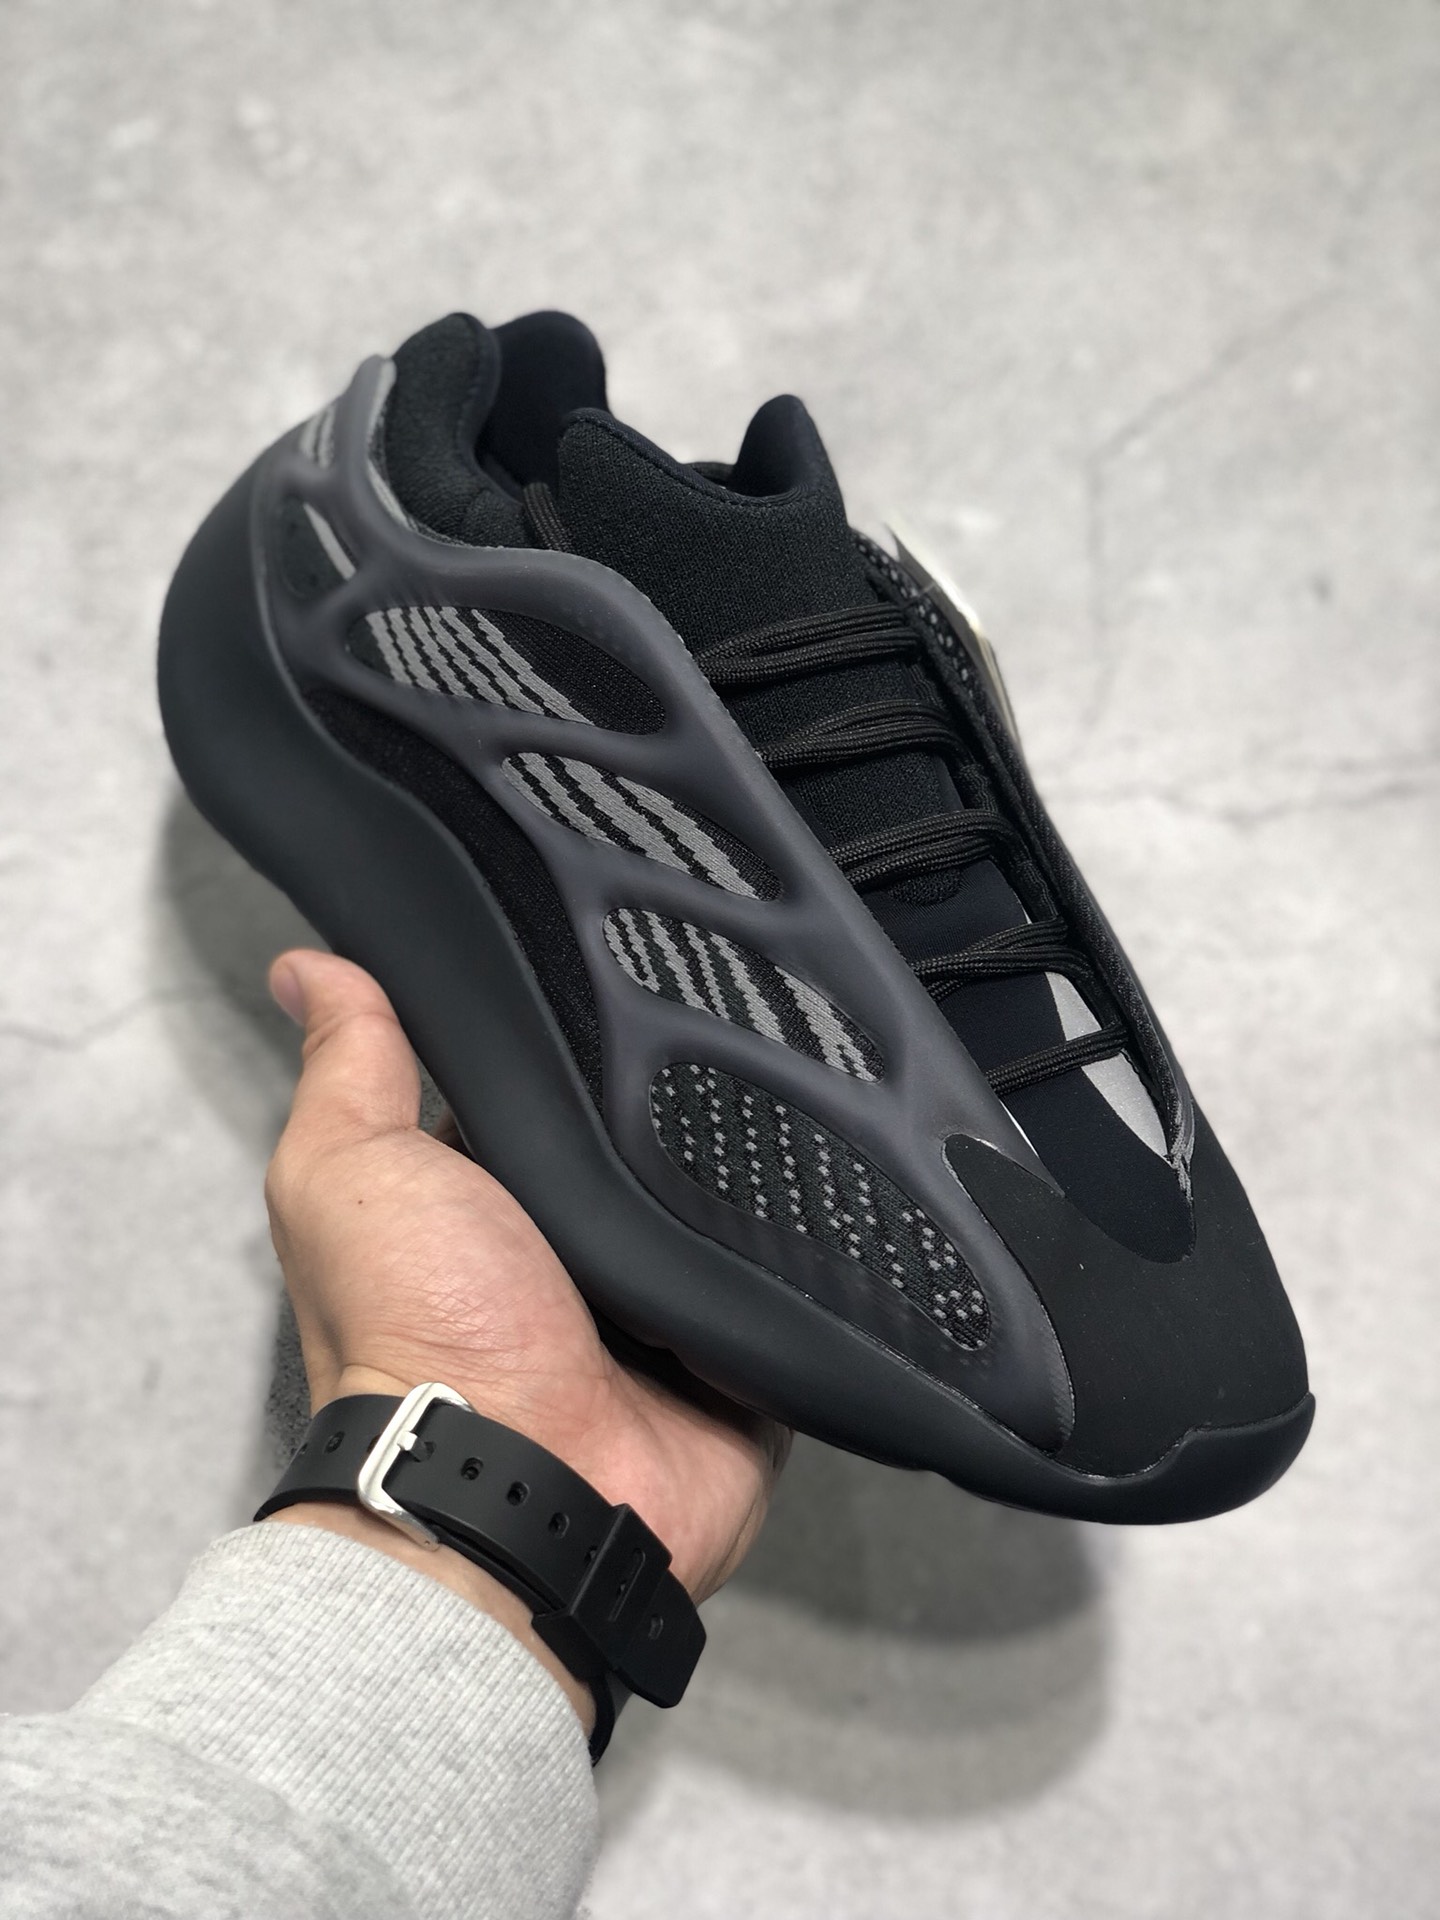 adidas yeezy 700 v3 triple black